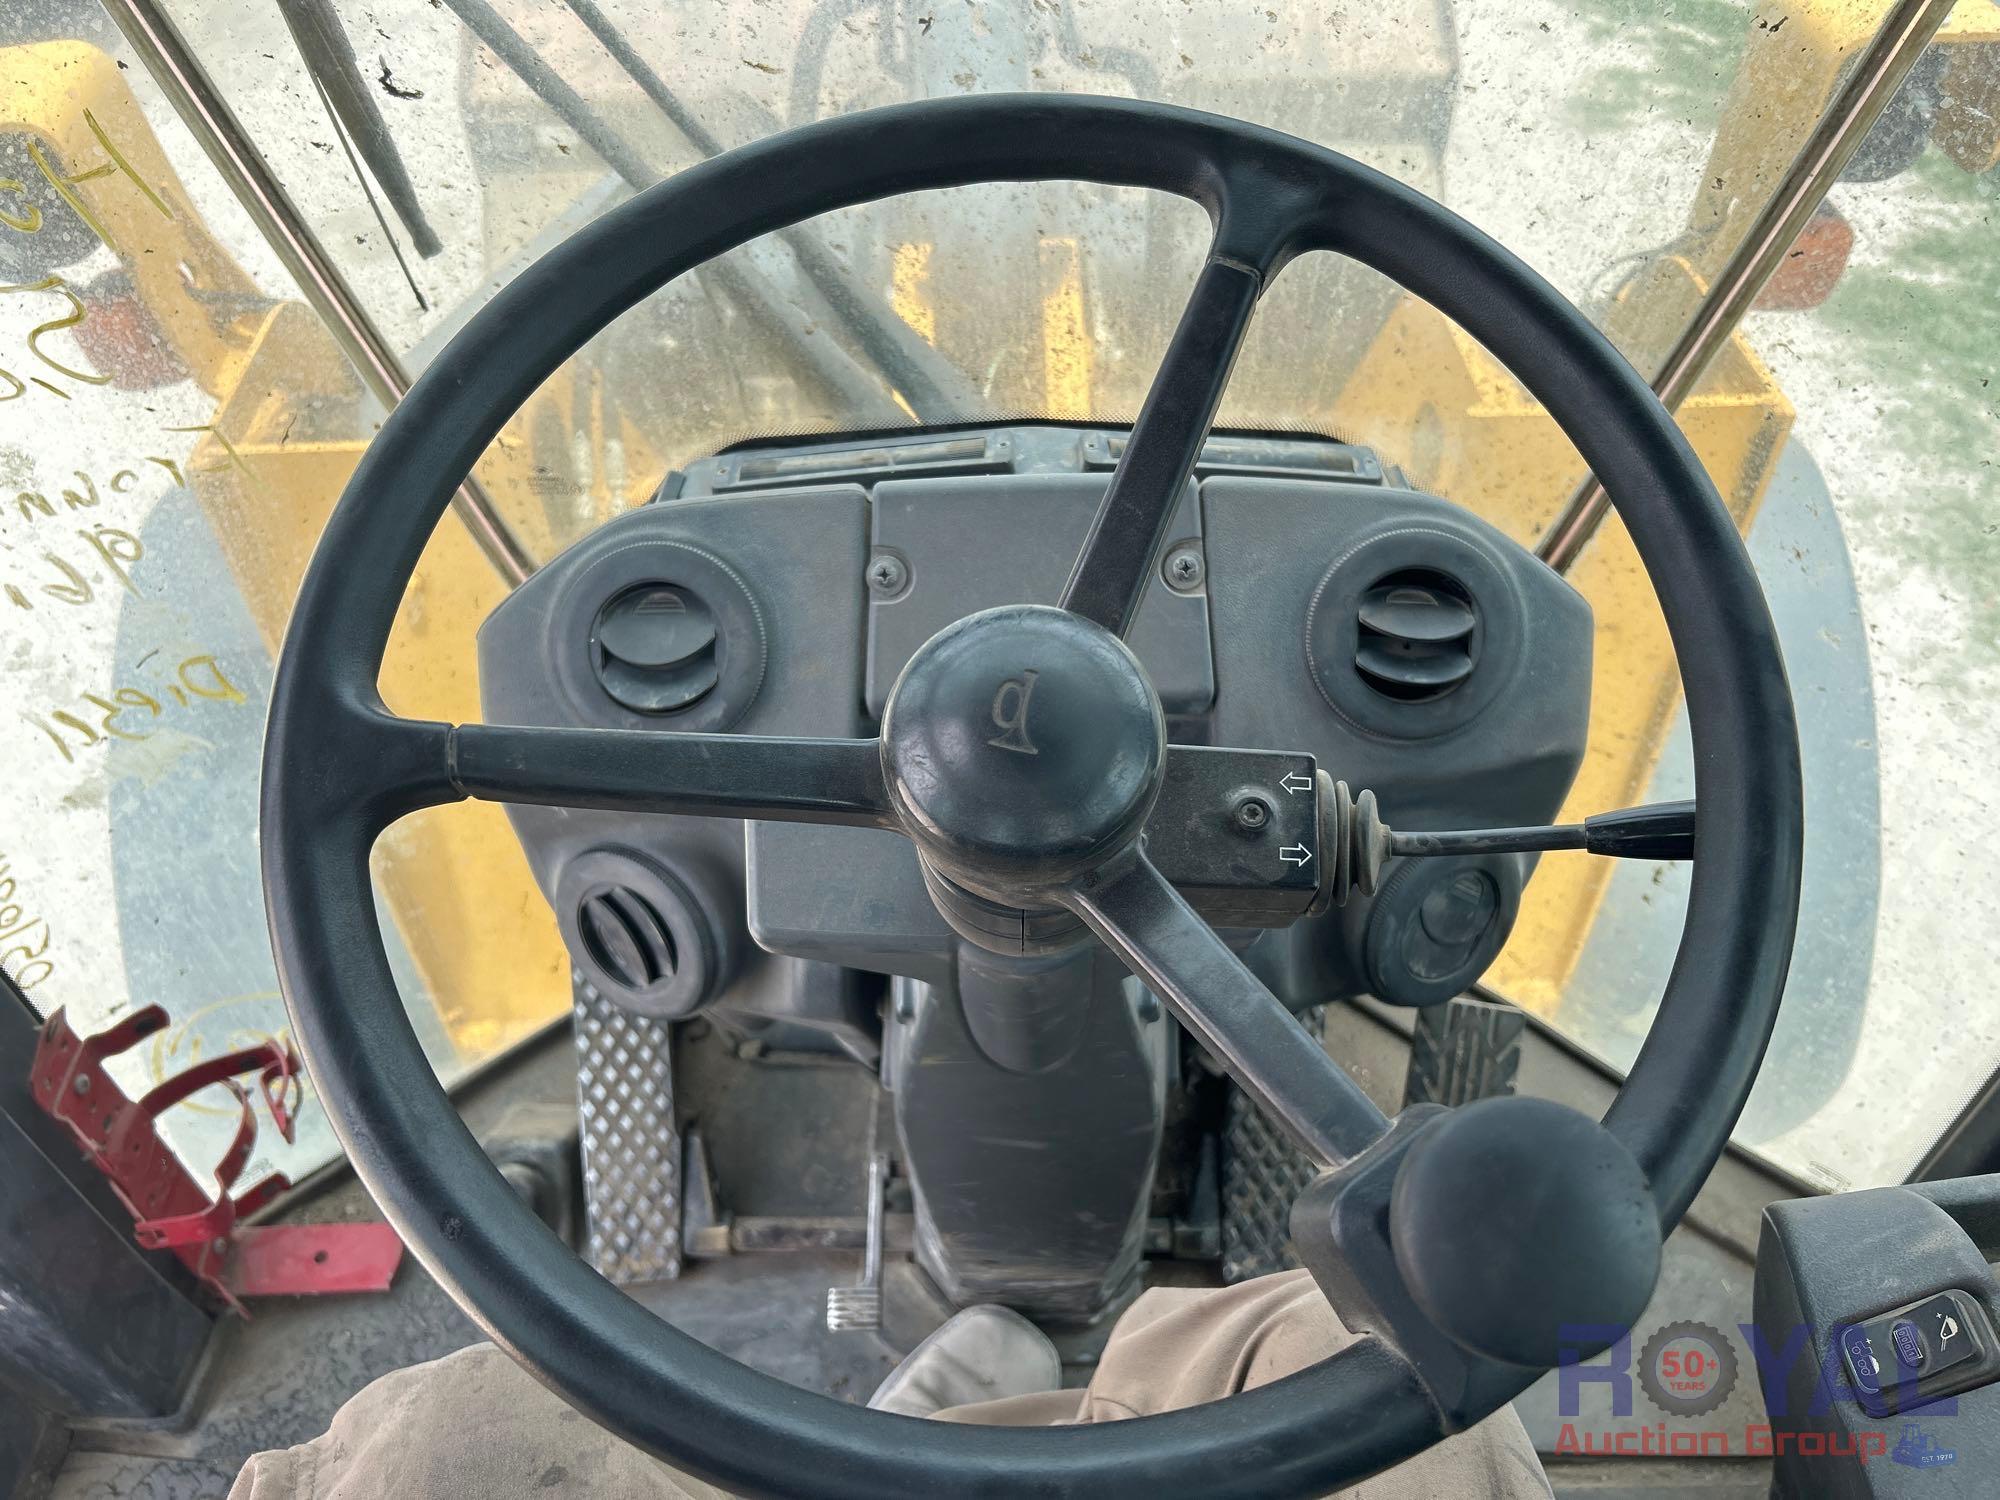 2016 John Deere 544K 4x4 Articulated Wheel Loader